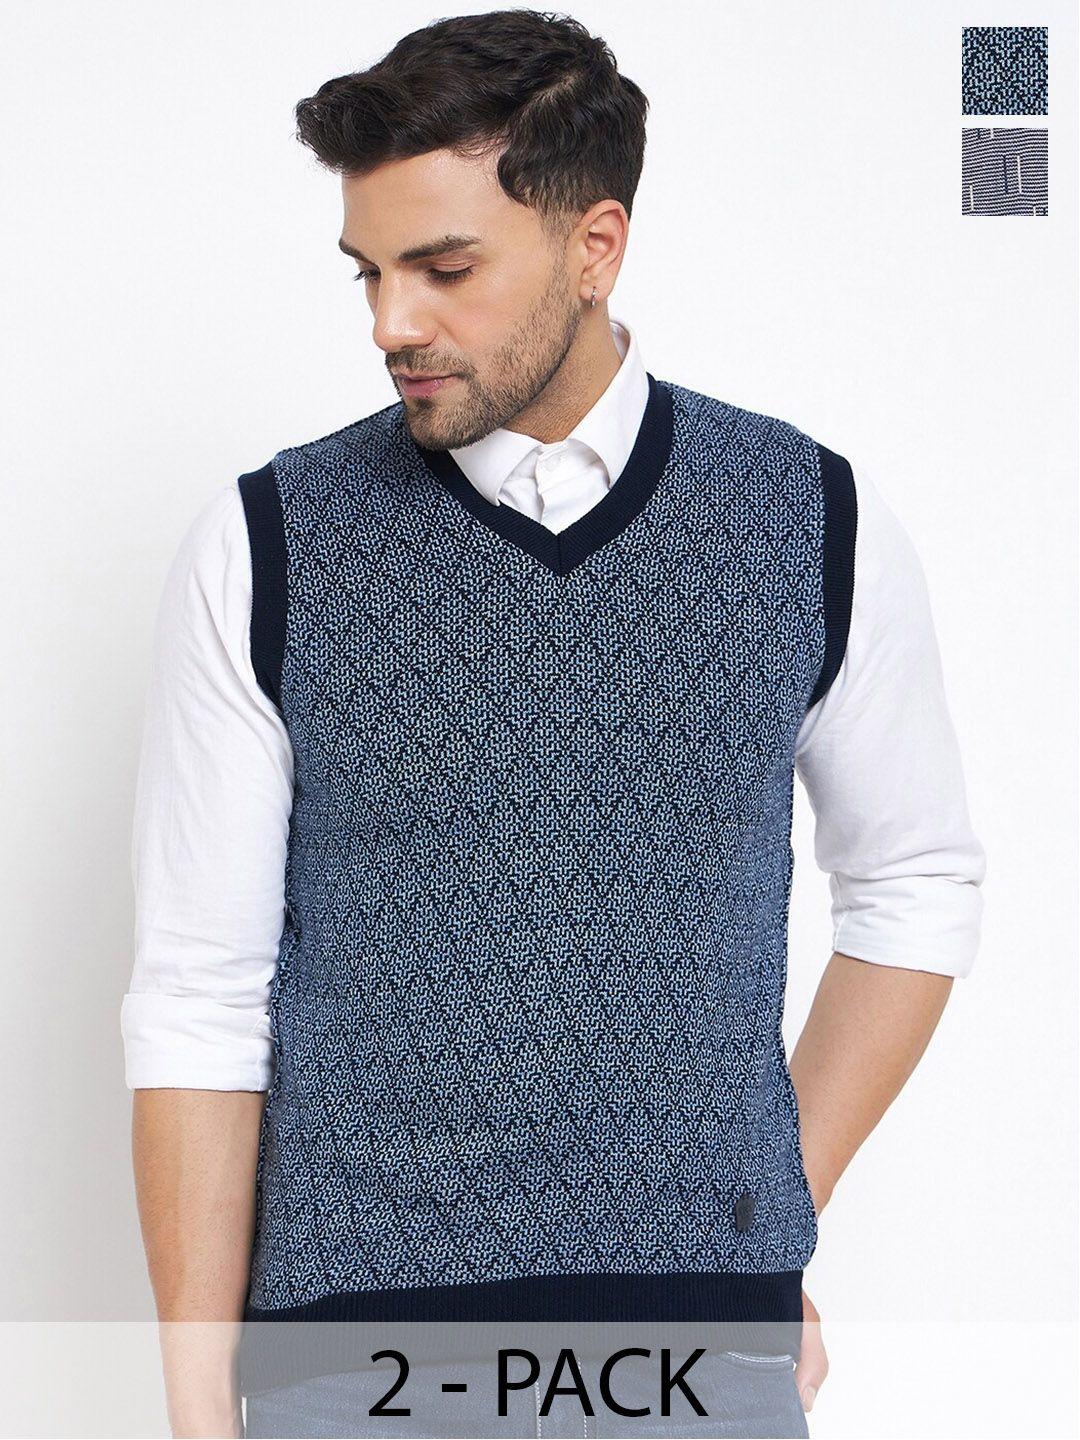 duke-pack-of-2-self-design-sleeveless-sweater-vests